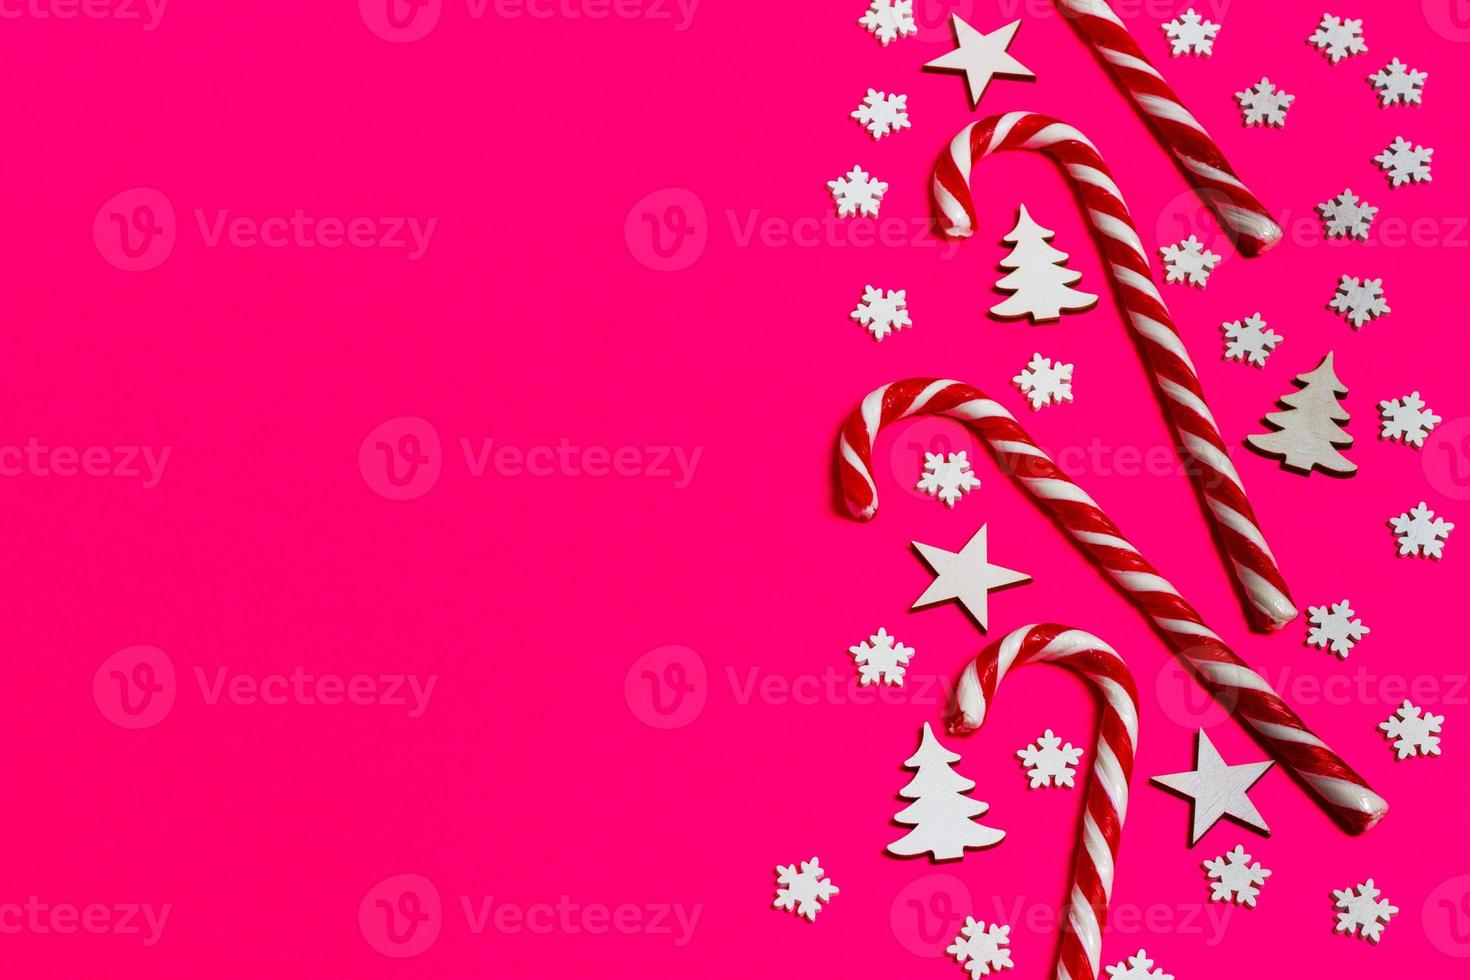 bastón de caramelo de navidad mintió uniformemente en fila sobre fondo rosa con copo de nieve decorativo y estrella. plano y vista superior foto